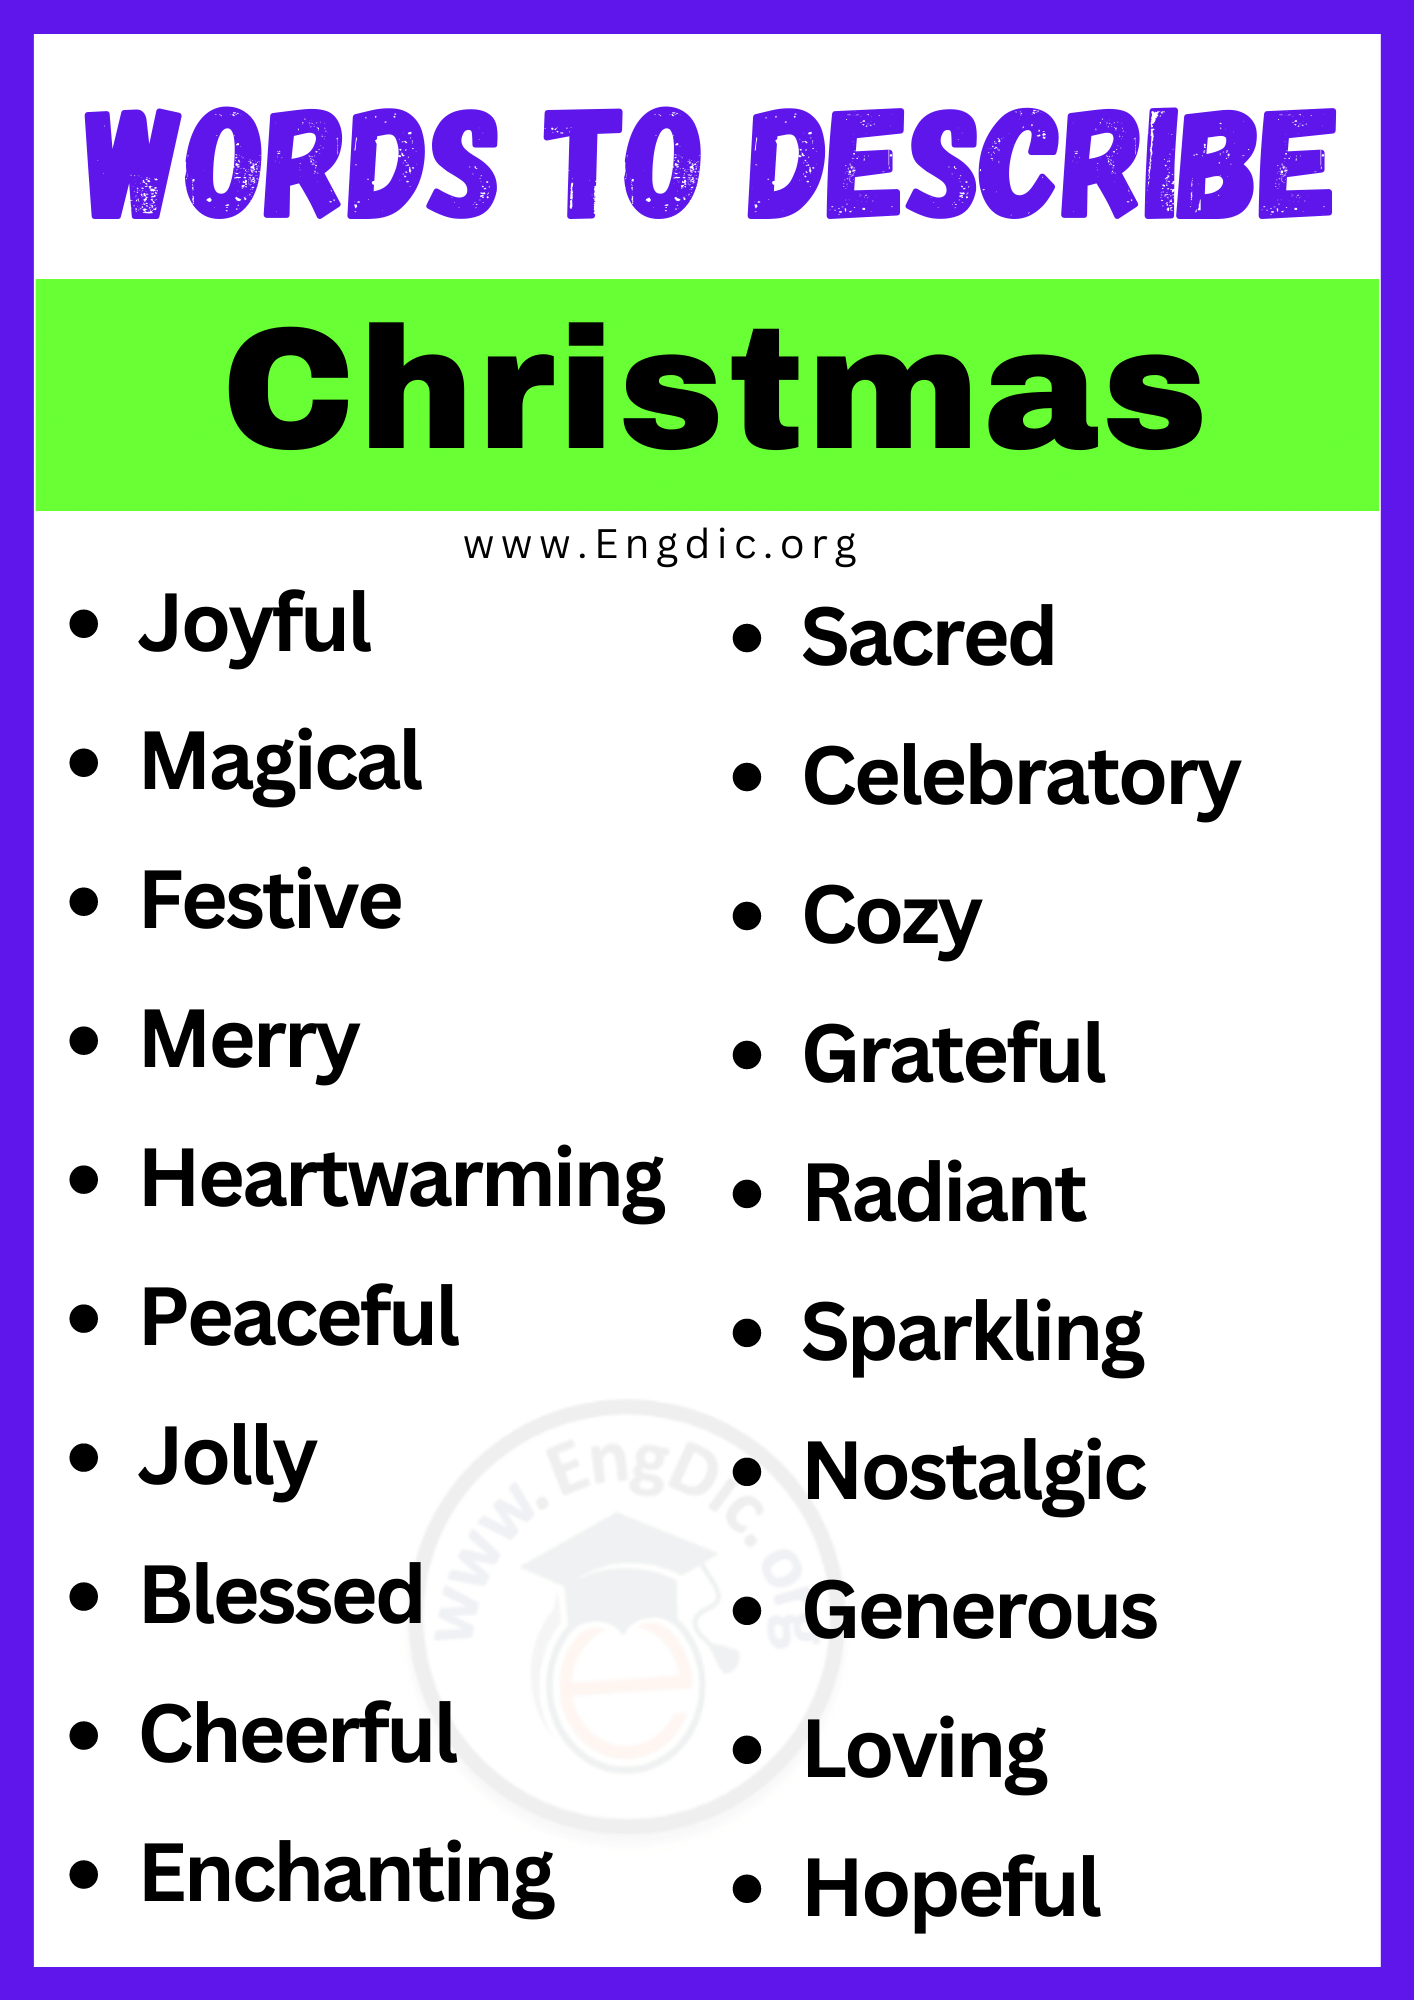 Words to Describe Christmas